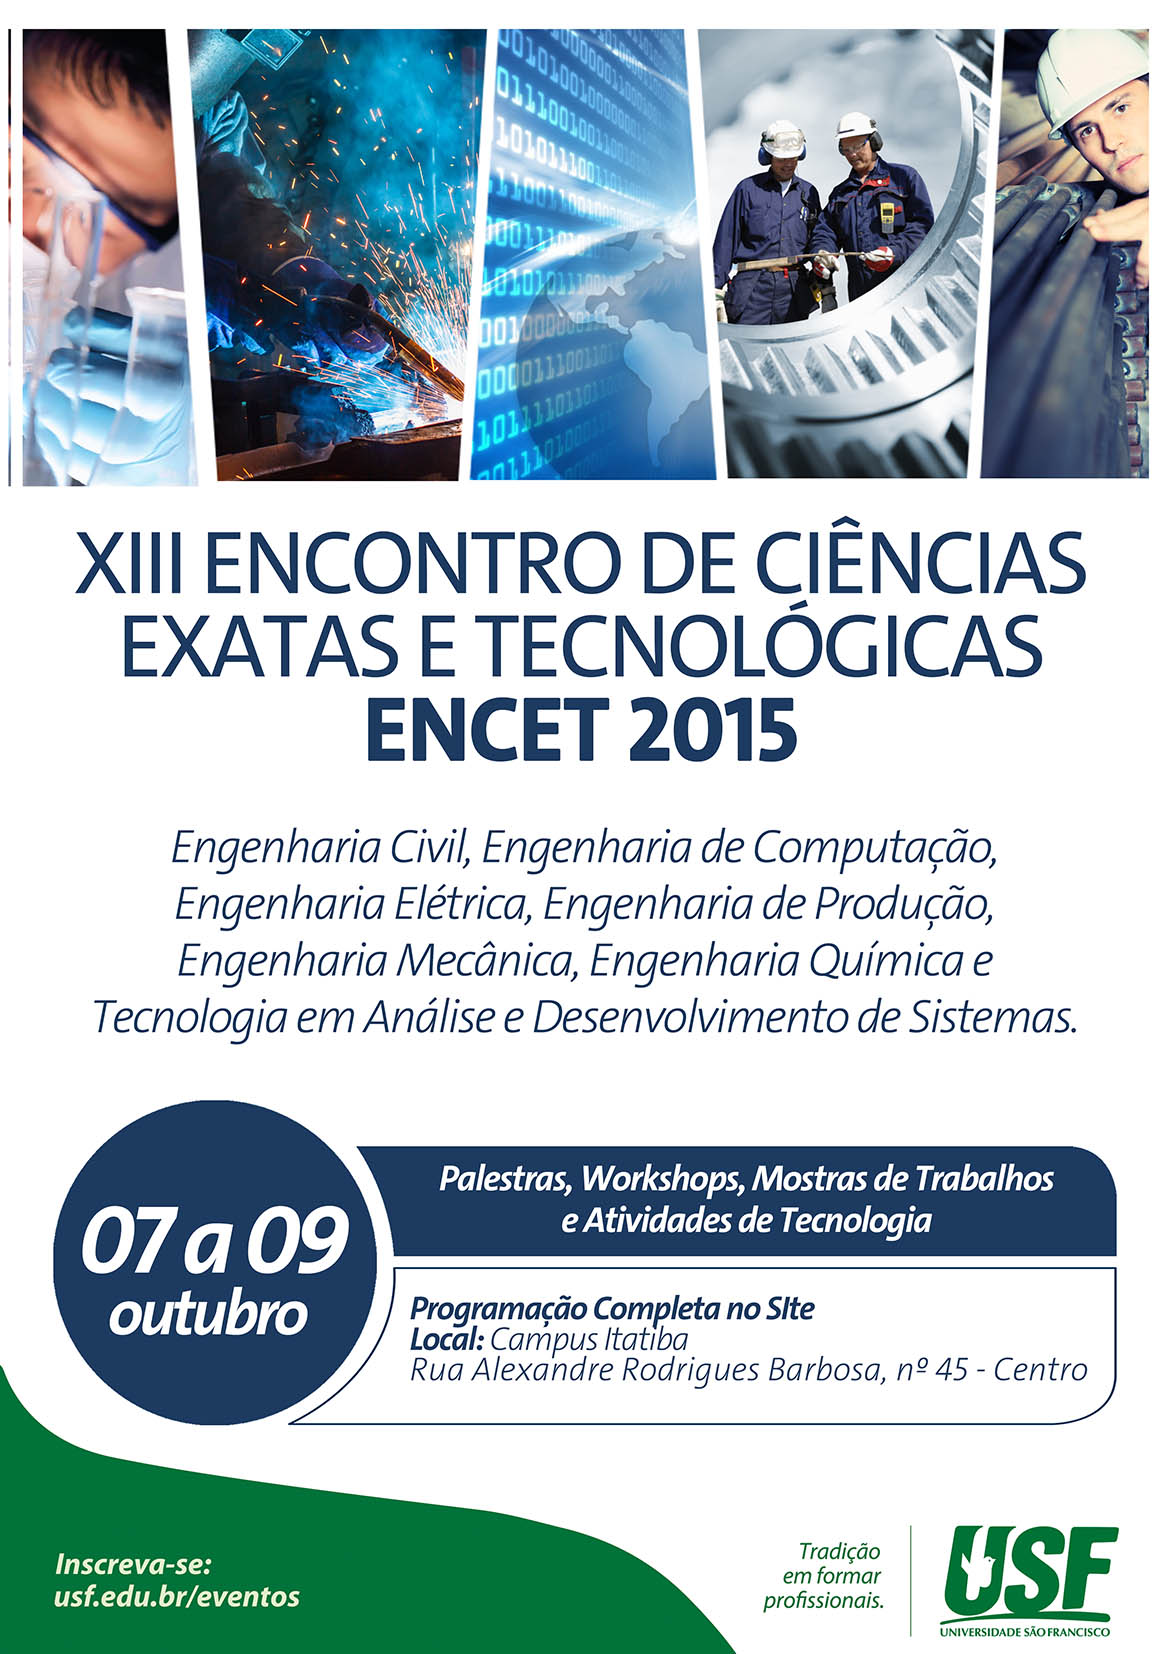 XIII Encontro de Ciências Exatas e Tecnológicas – ENCET 2015